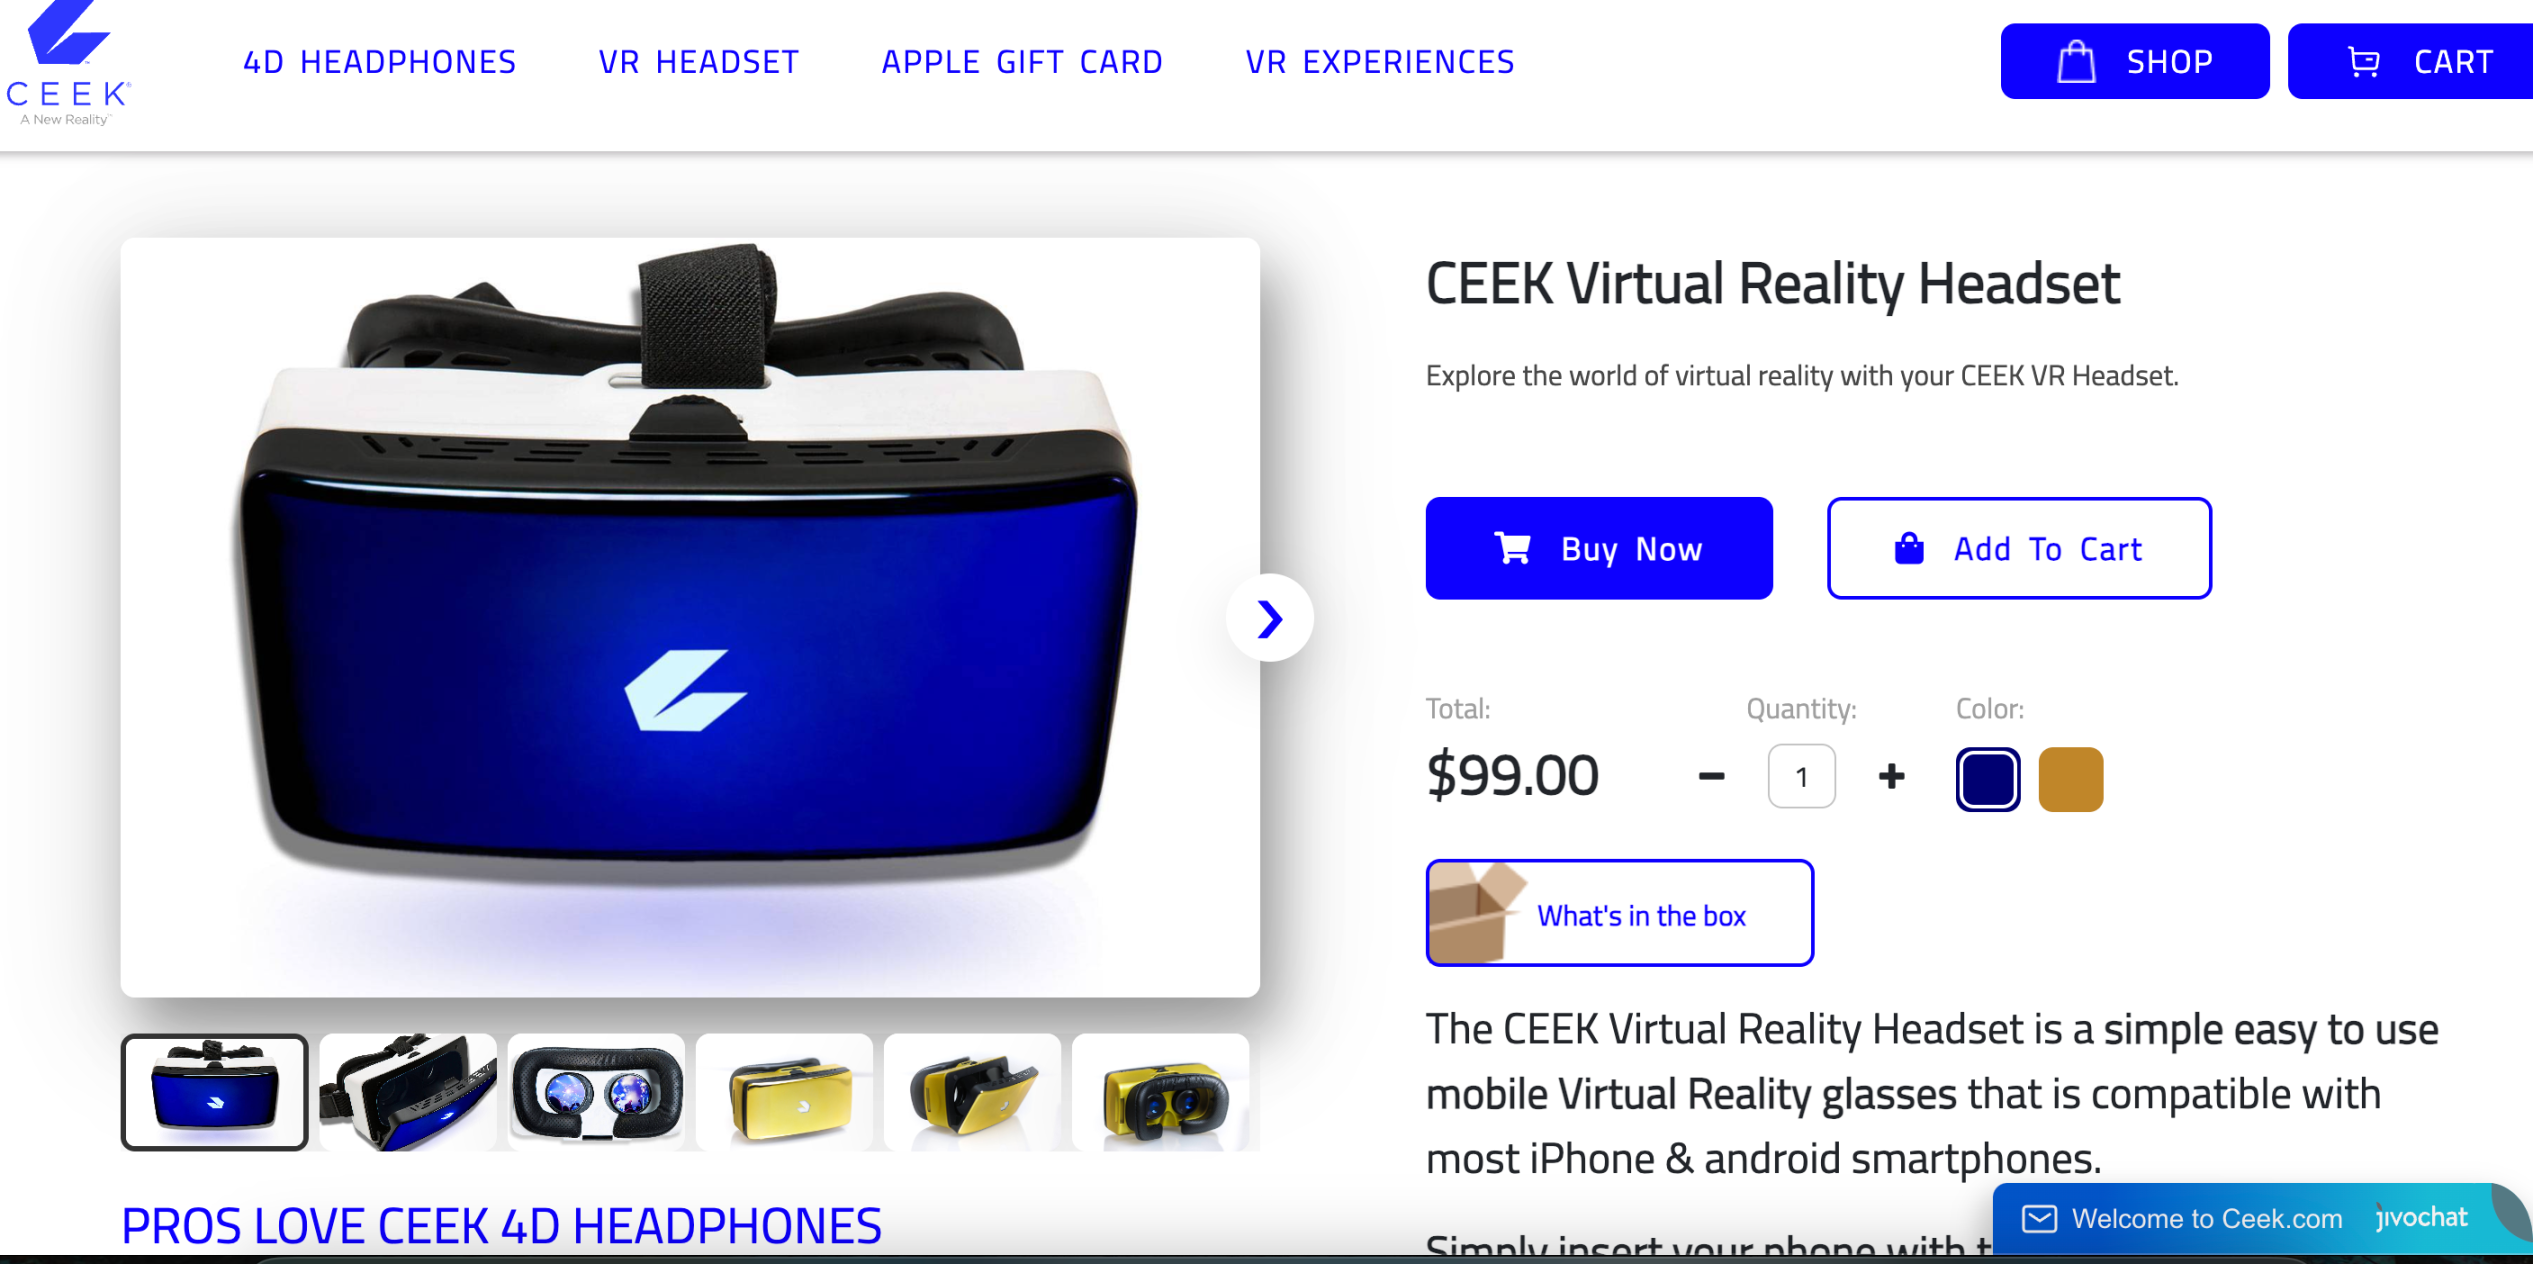 苹果 Vision Pro 即将发售，一览值得关注的VR/AR加密项目？